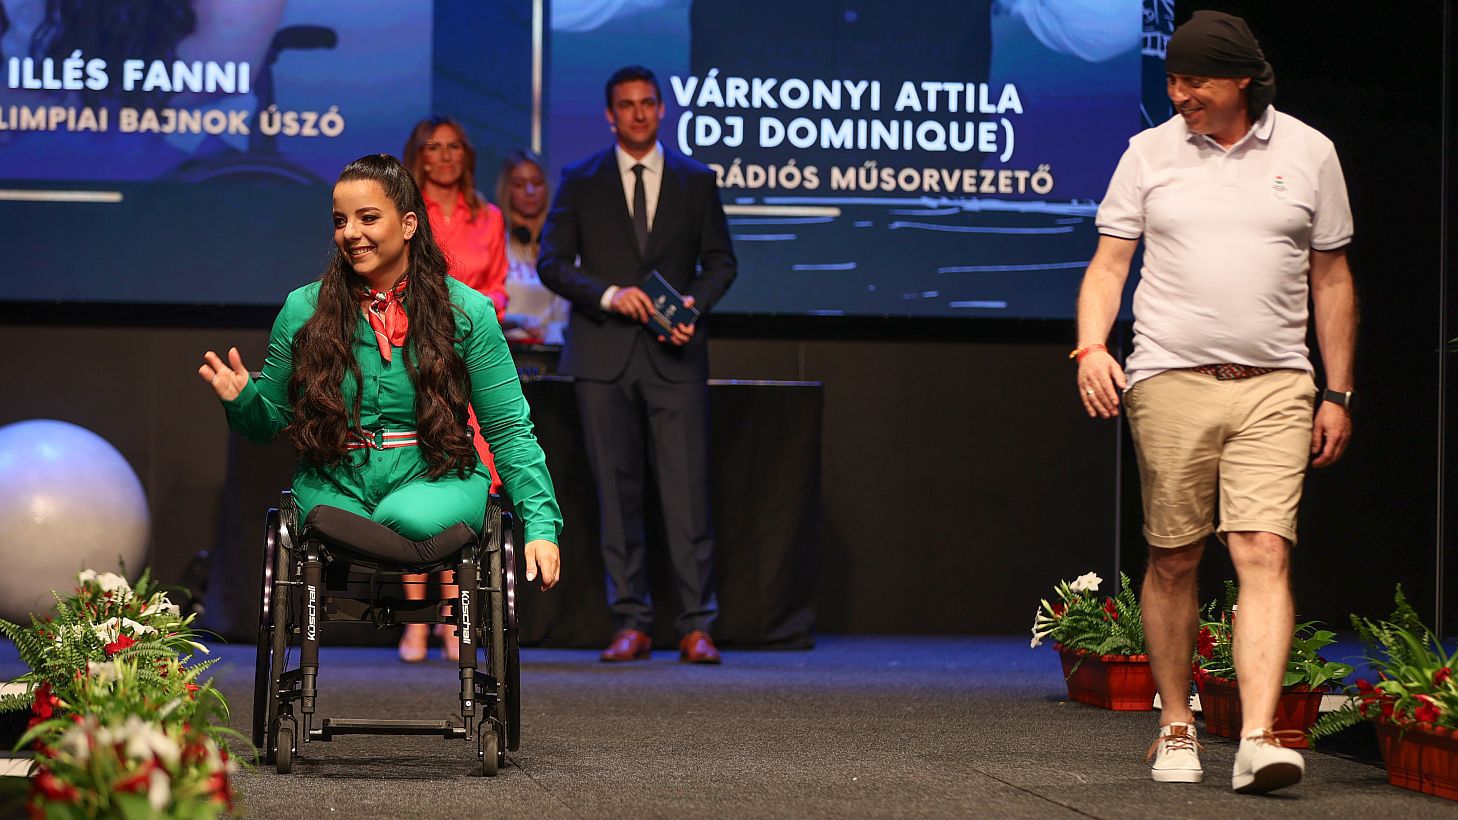 Illés Fanni paralimpiai bajnok és Várkonyi Attila (fotó: Fuszek Gábor)